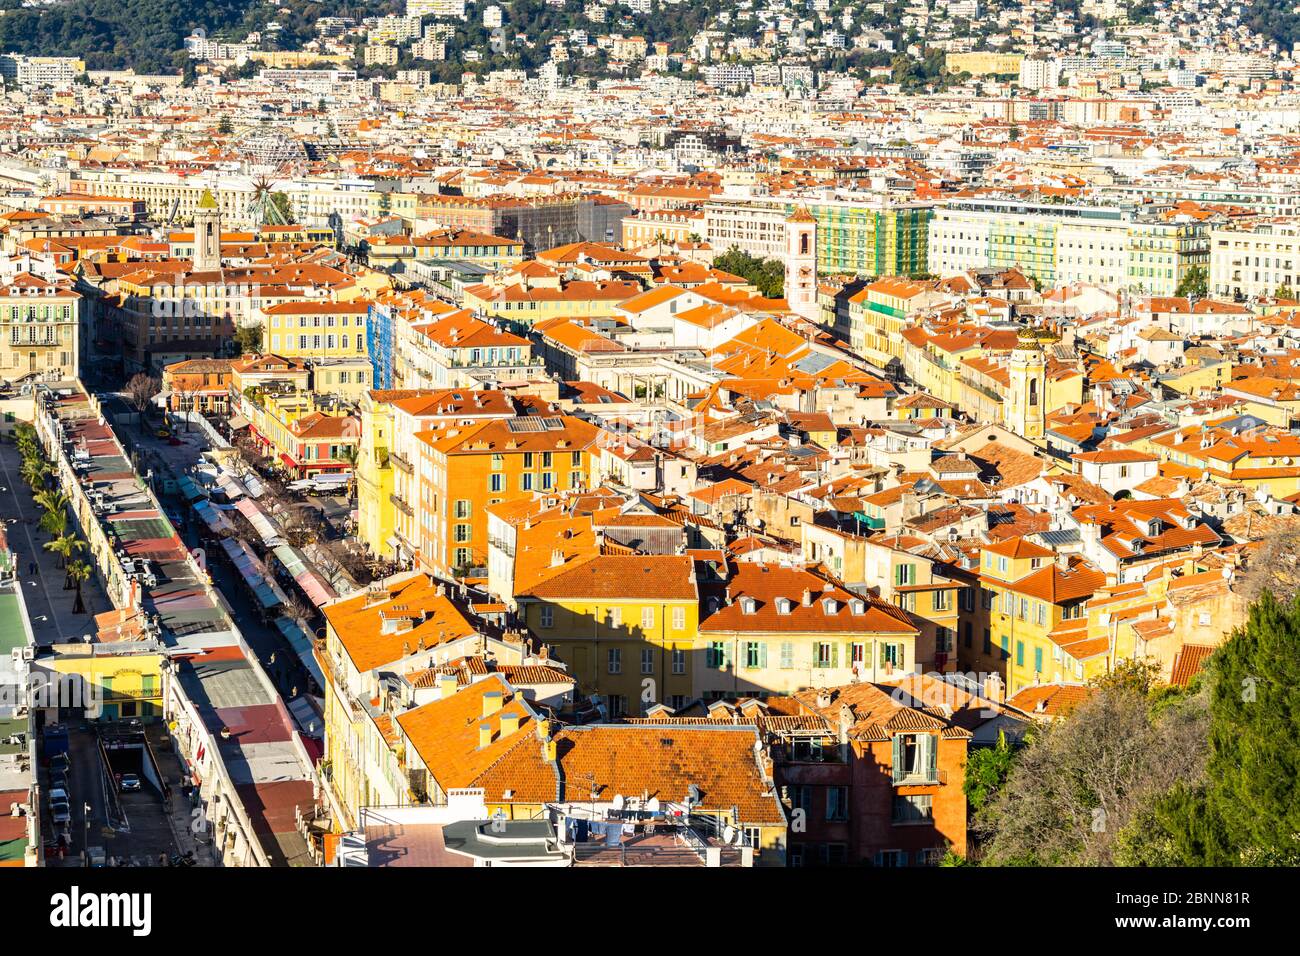 Vue panoramique aérienne de la vieille ville de Nice vue depuis la colline du Château, France Banque D'Images